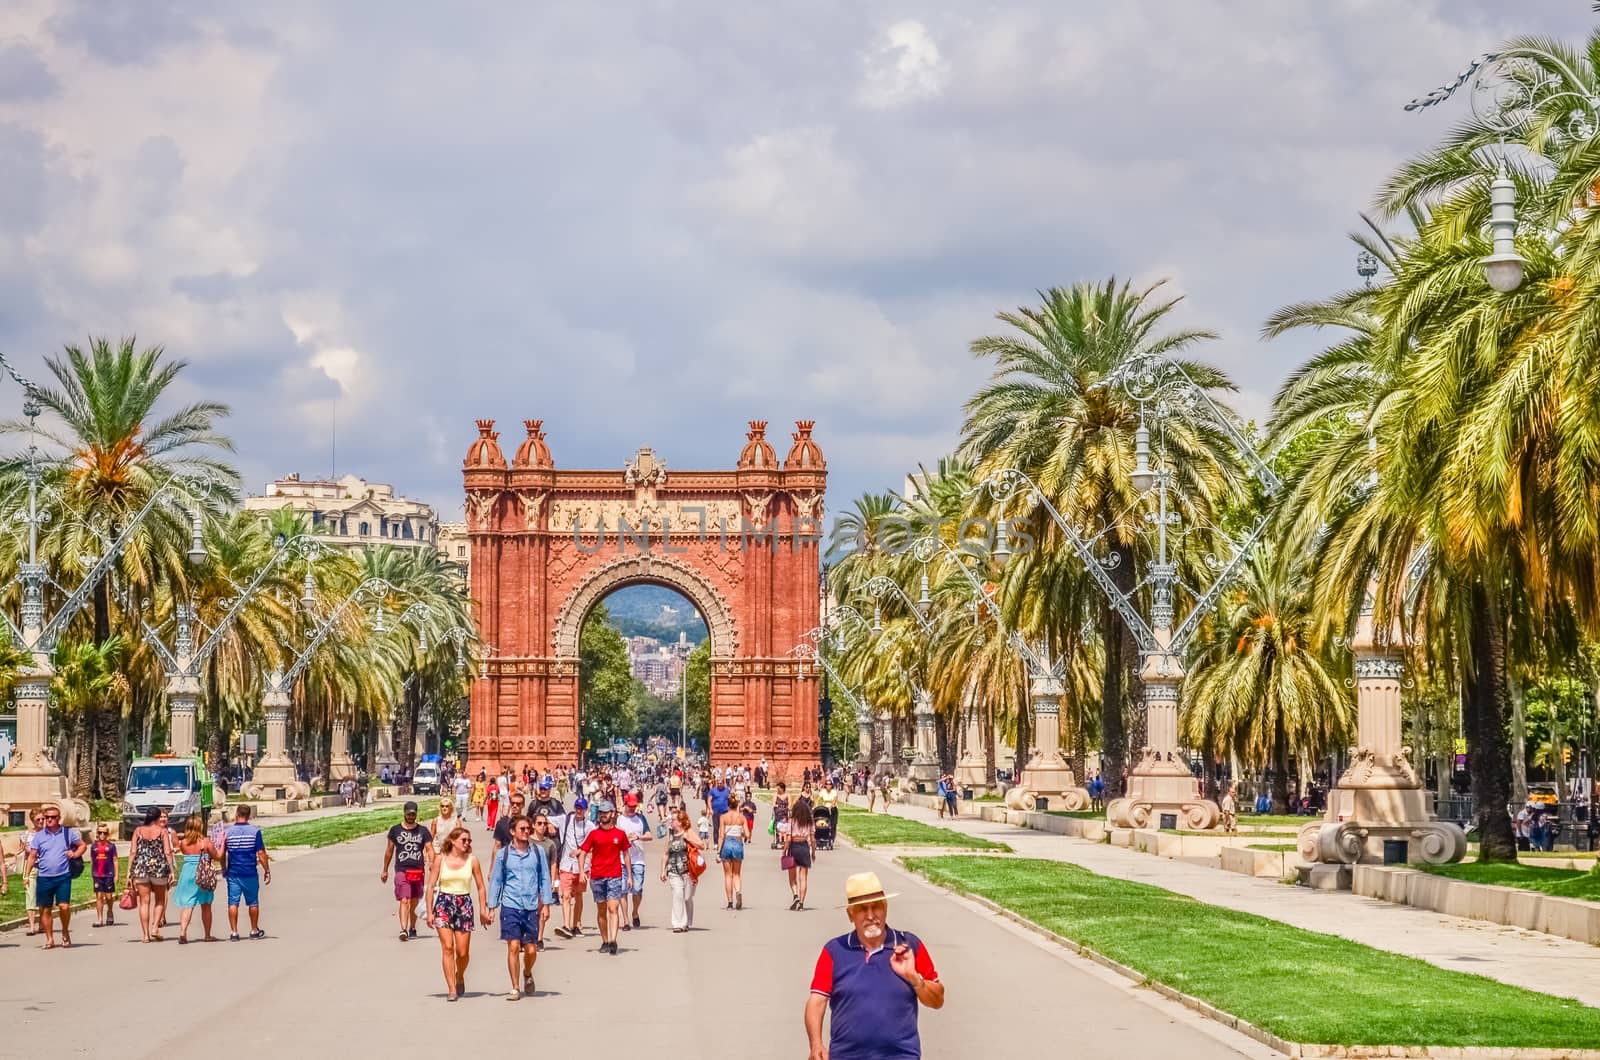 Promenade Passeig de Lluis Companys and the Arc de Triomf - a triumphal arch in the city of Barcelona in Catalonia, Spain.